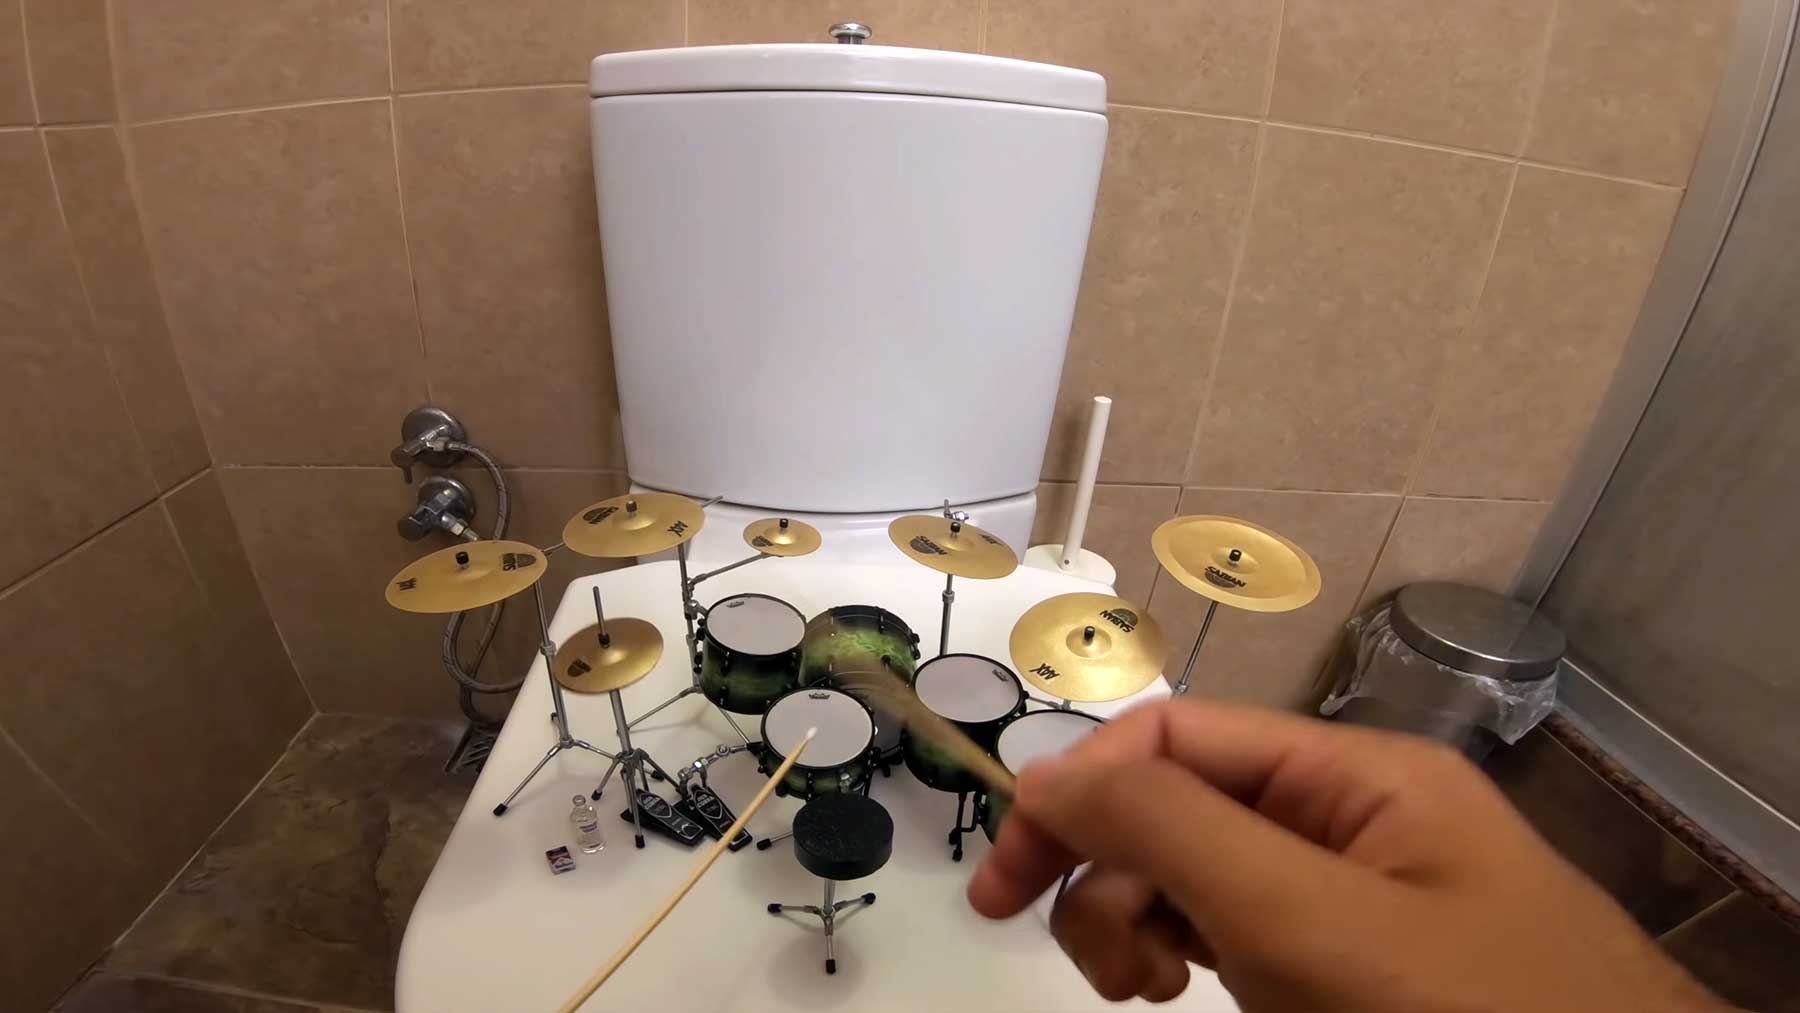 "Toxicity" von System of a Down auf Miniaturschlagzeug gespielt toxicity-miniature-drums-cover 